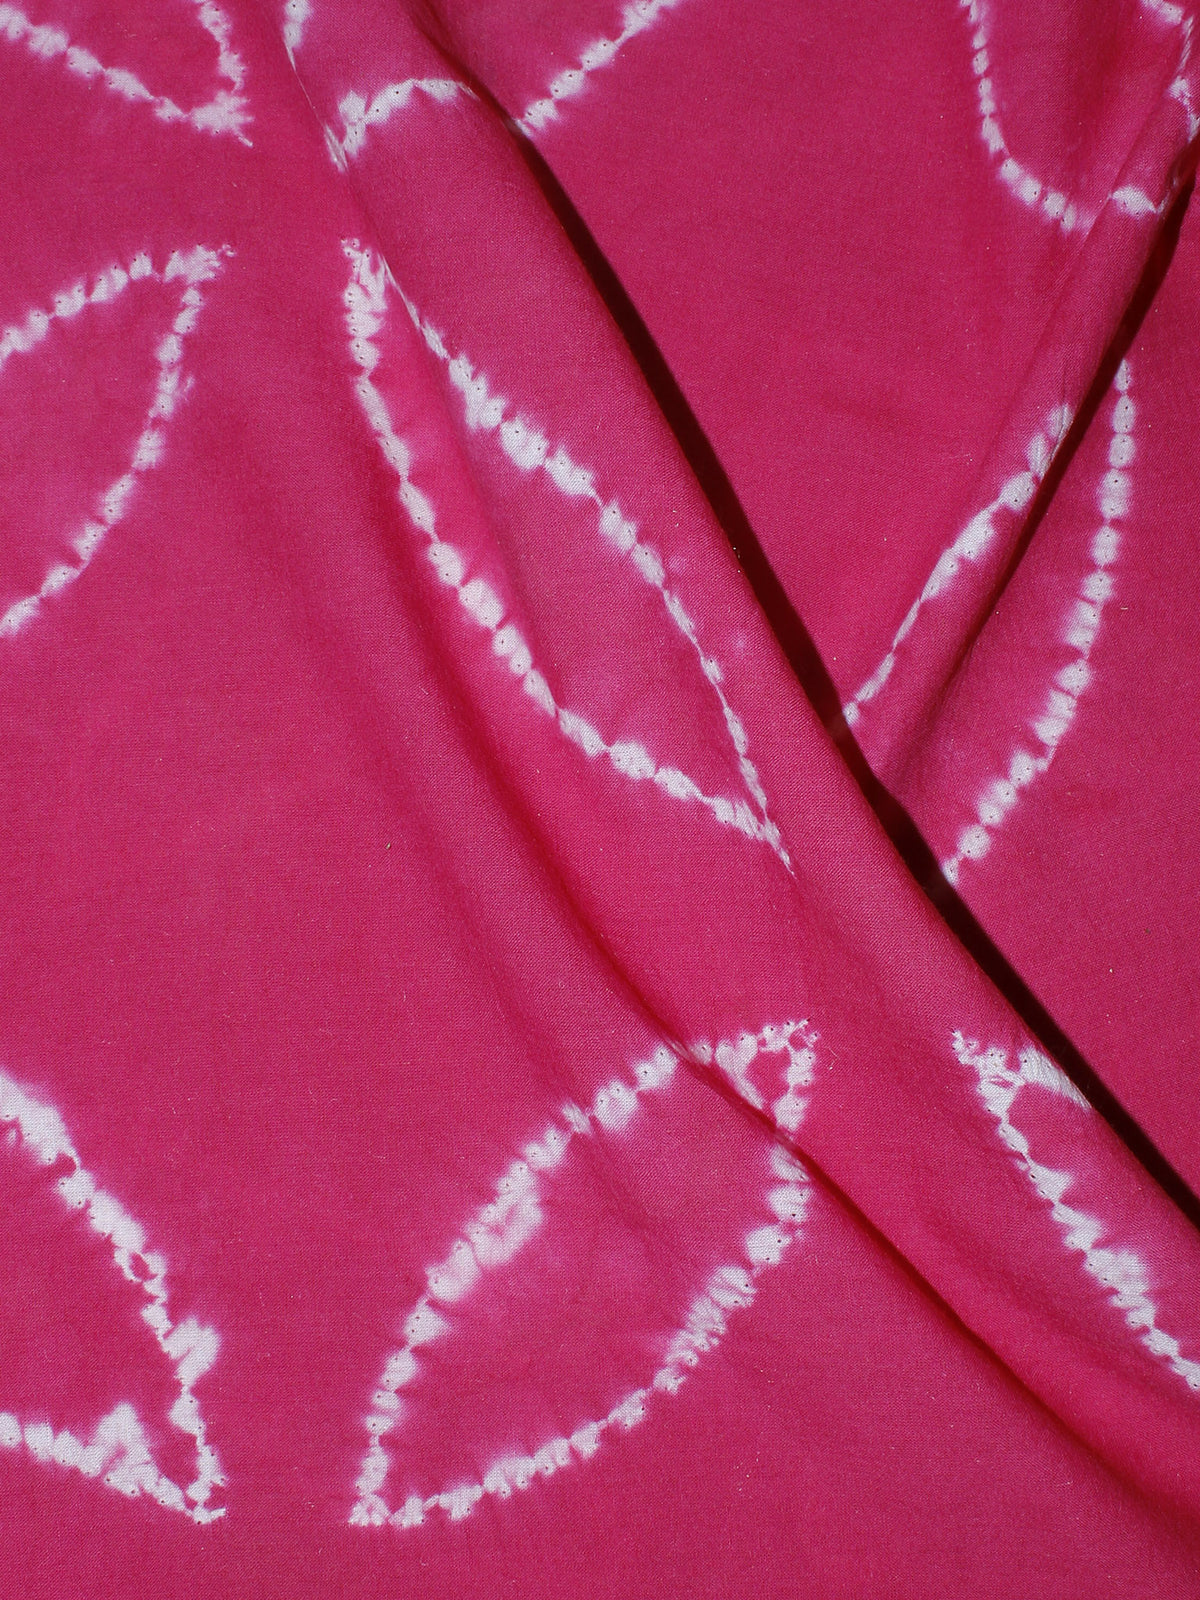 Pink White Hand Block Printed Shibori Cotton Cambric Fabric Per Meter - F0916265